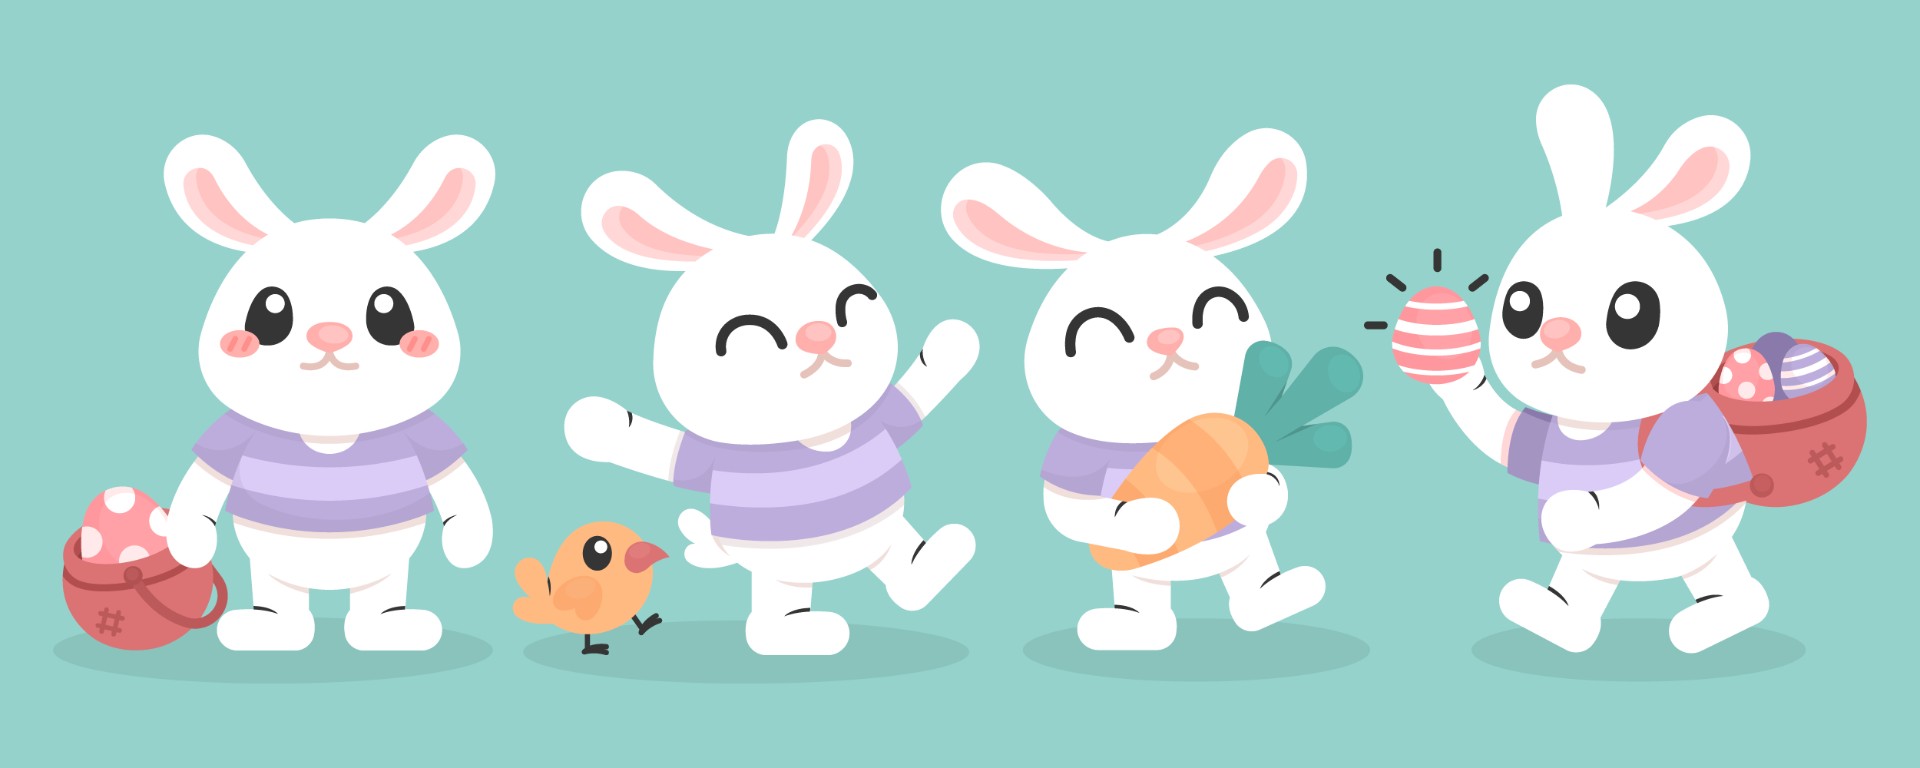 复活节卡通兔子插图0